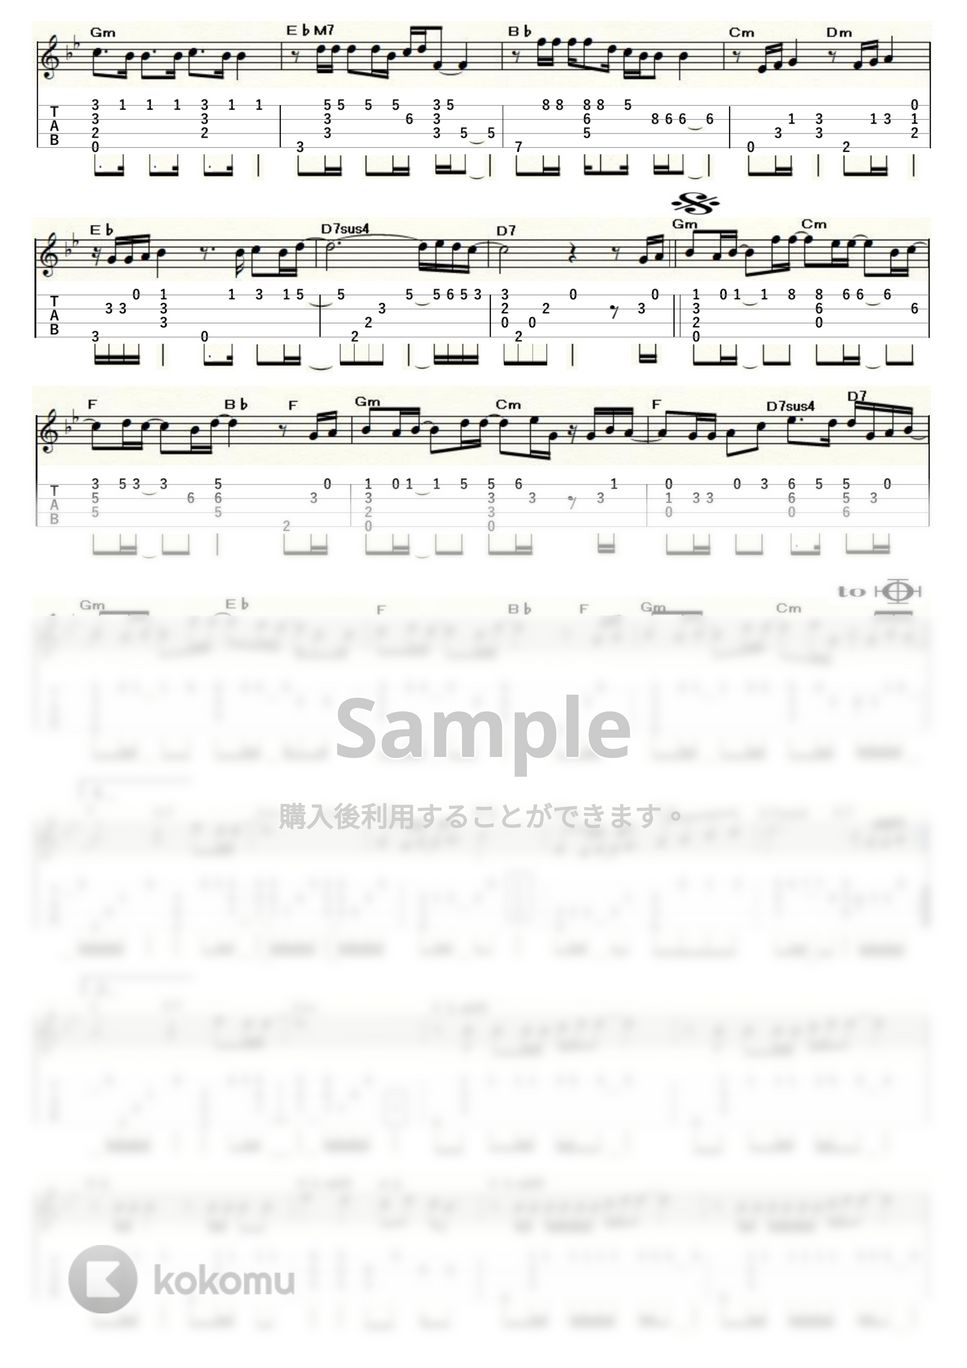 いきものがかり - YELL (ｳｸﾚﾚｿﾛ/Low-G/上級) by ukulelepapa